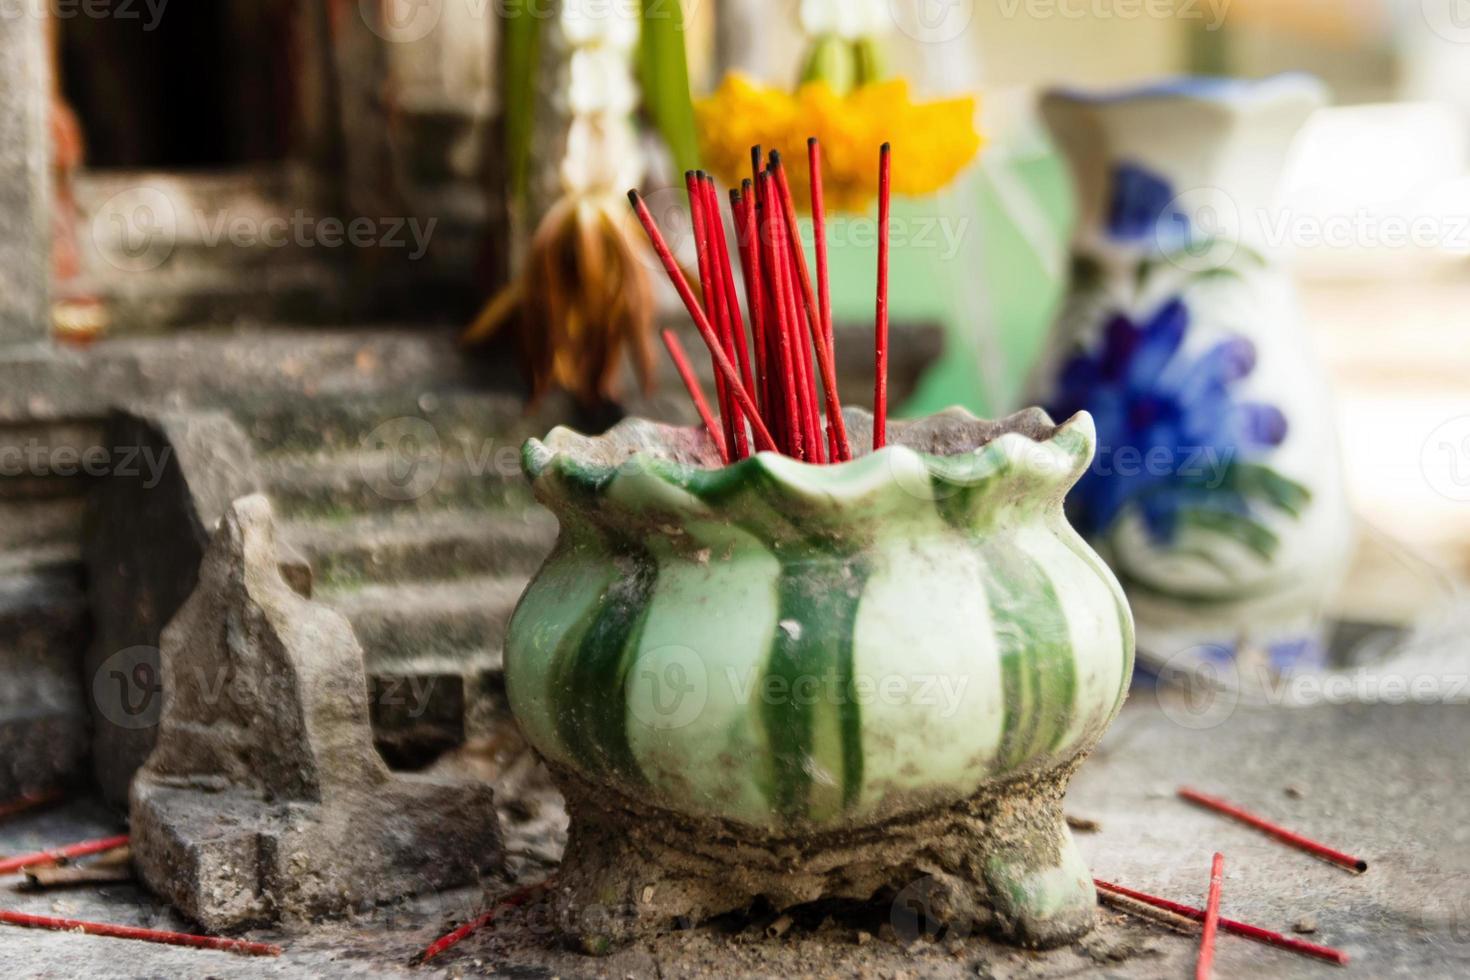 aromatisch wierook rood stokjes in klei pot voor bidden Boeddha of Hindoe goden naar tonen respect. foto